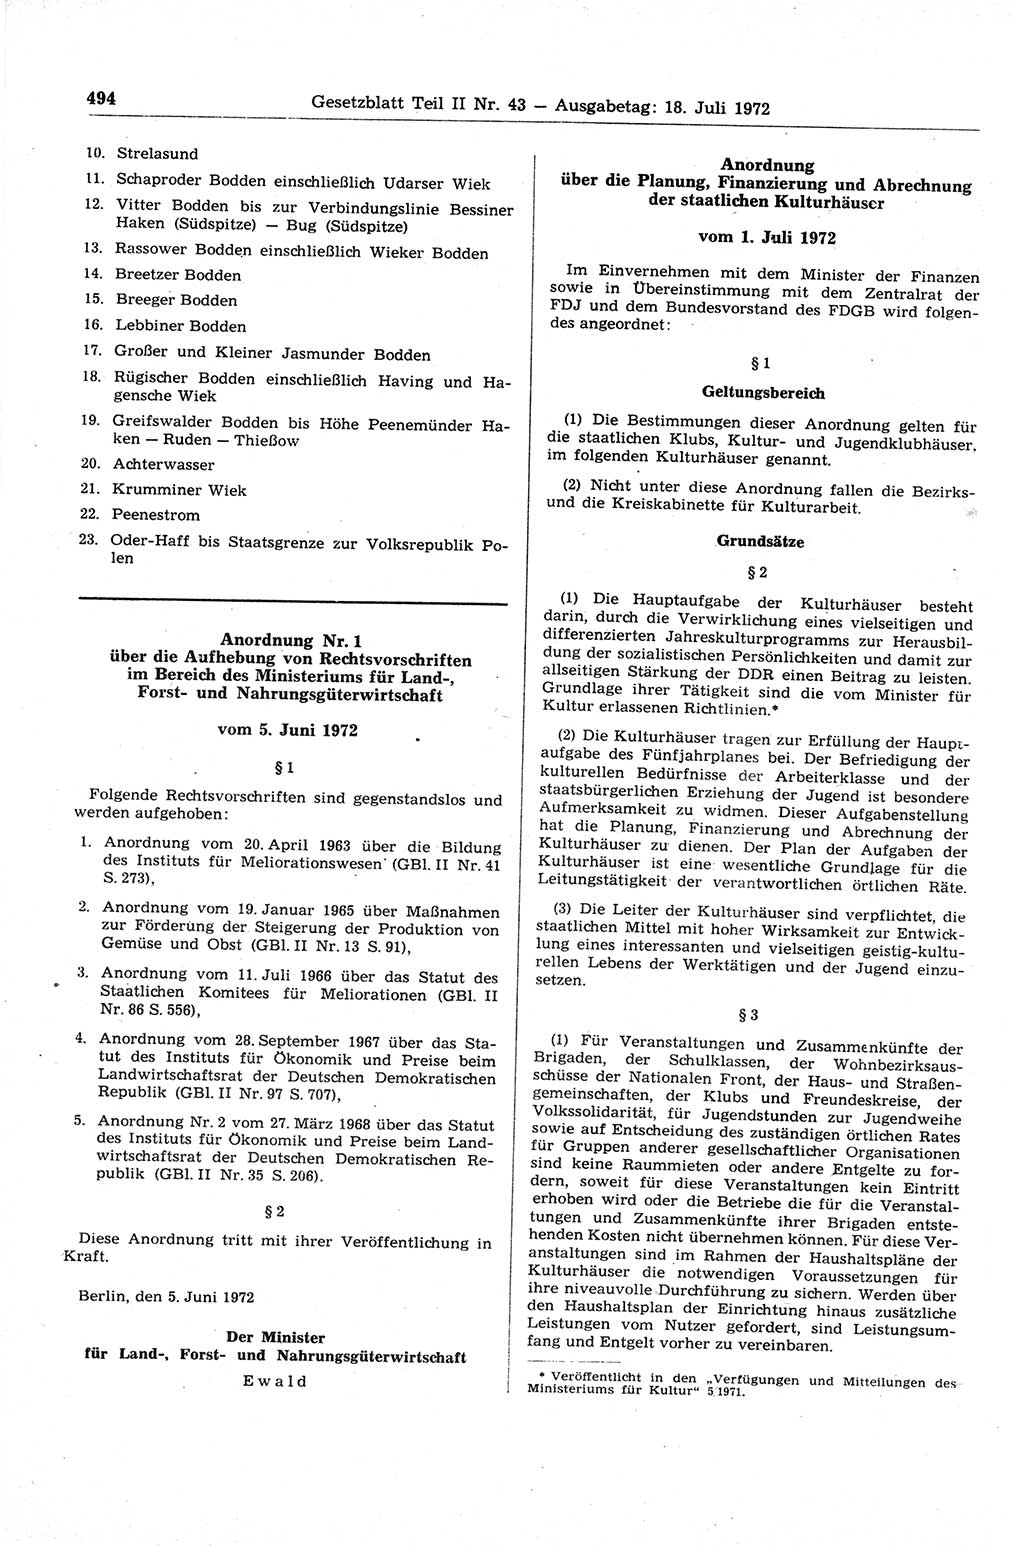 Gesetzblatt (GBl.) der Deutschen Demokratischen Republik (DDR) Teil ⅠⅠ 1972, Seite 494 (GBl. DDR ⅠⅠ 1972, S. 494)